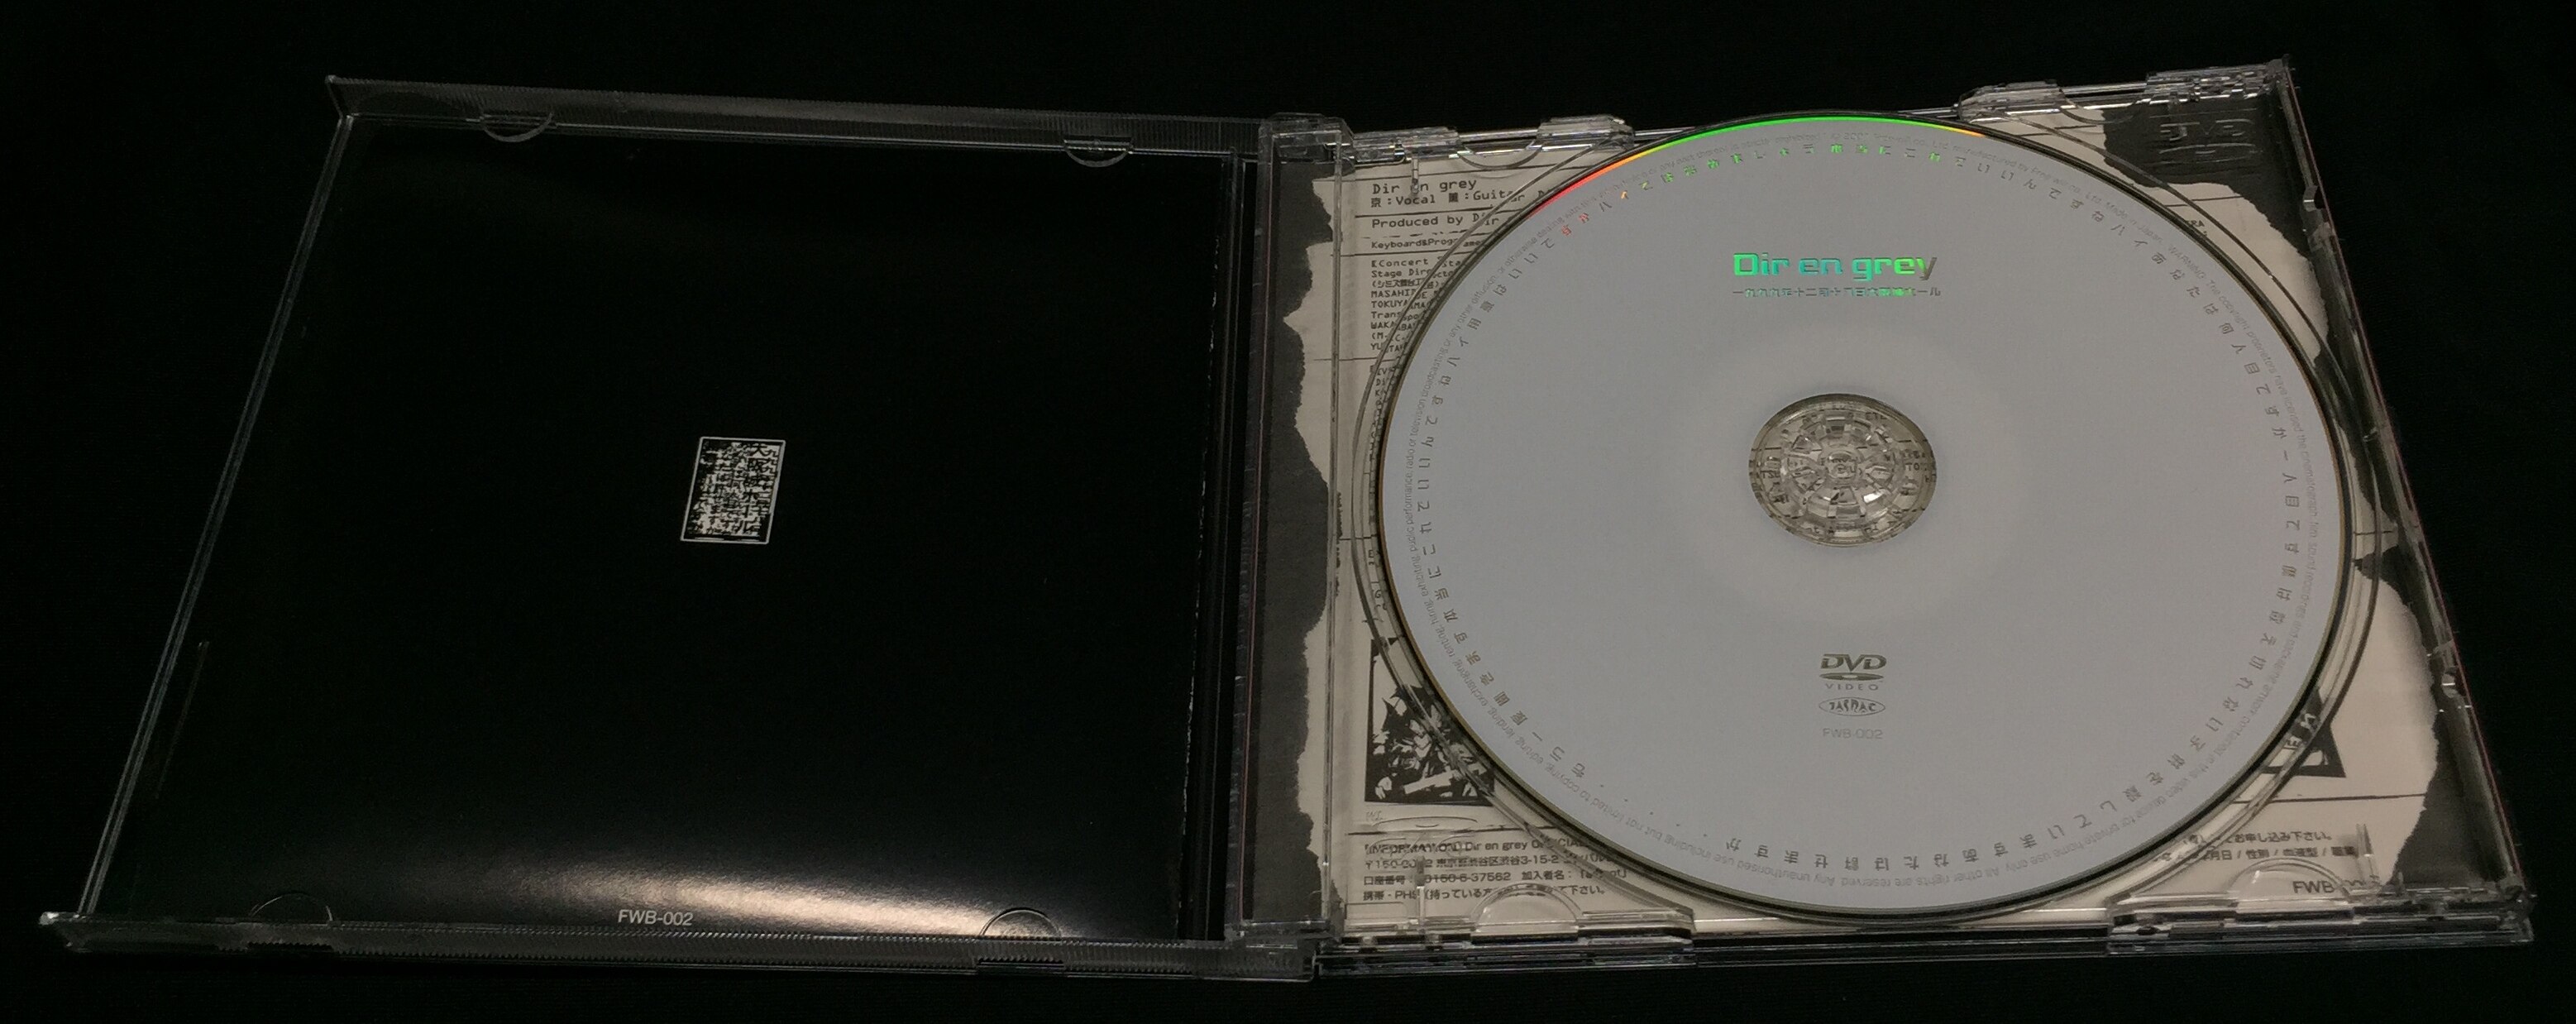 DIR EN GREY 通常盤DVD 1999年12月18日大阪城ホール | ありある